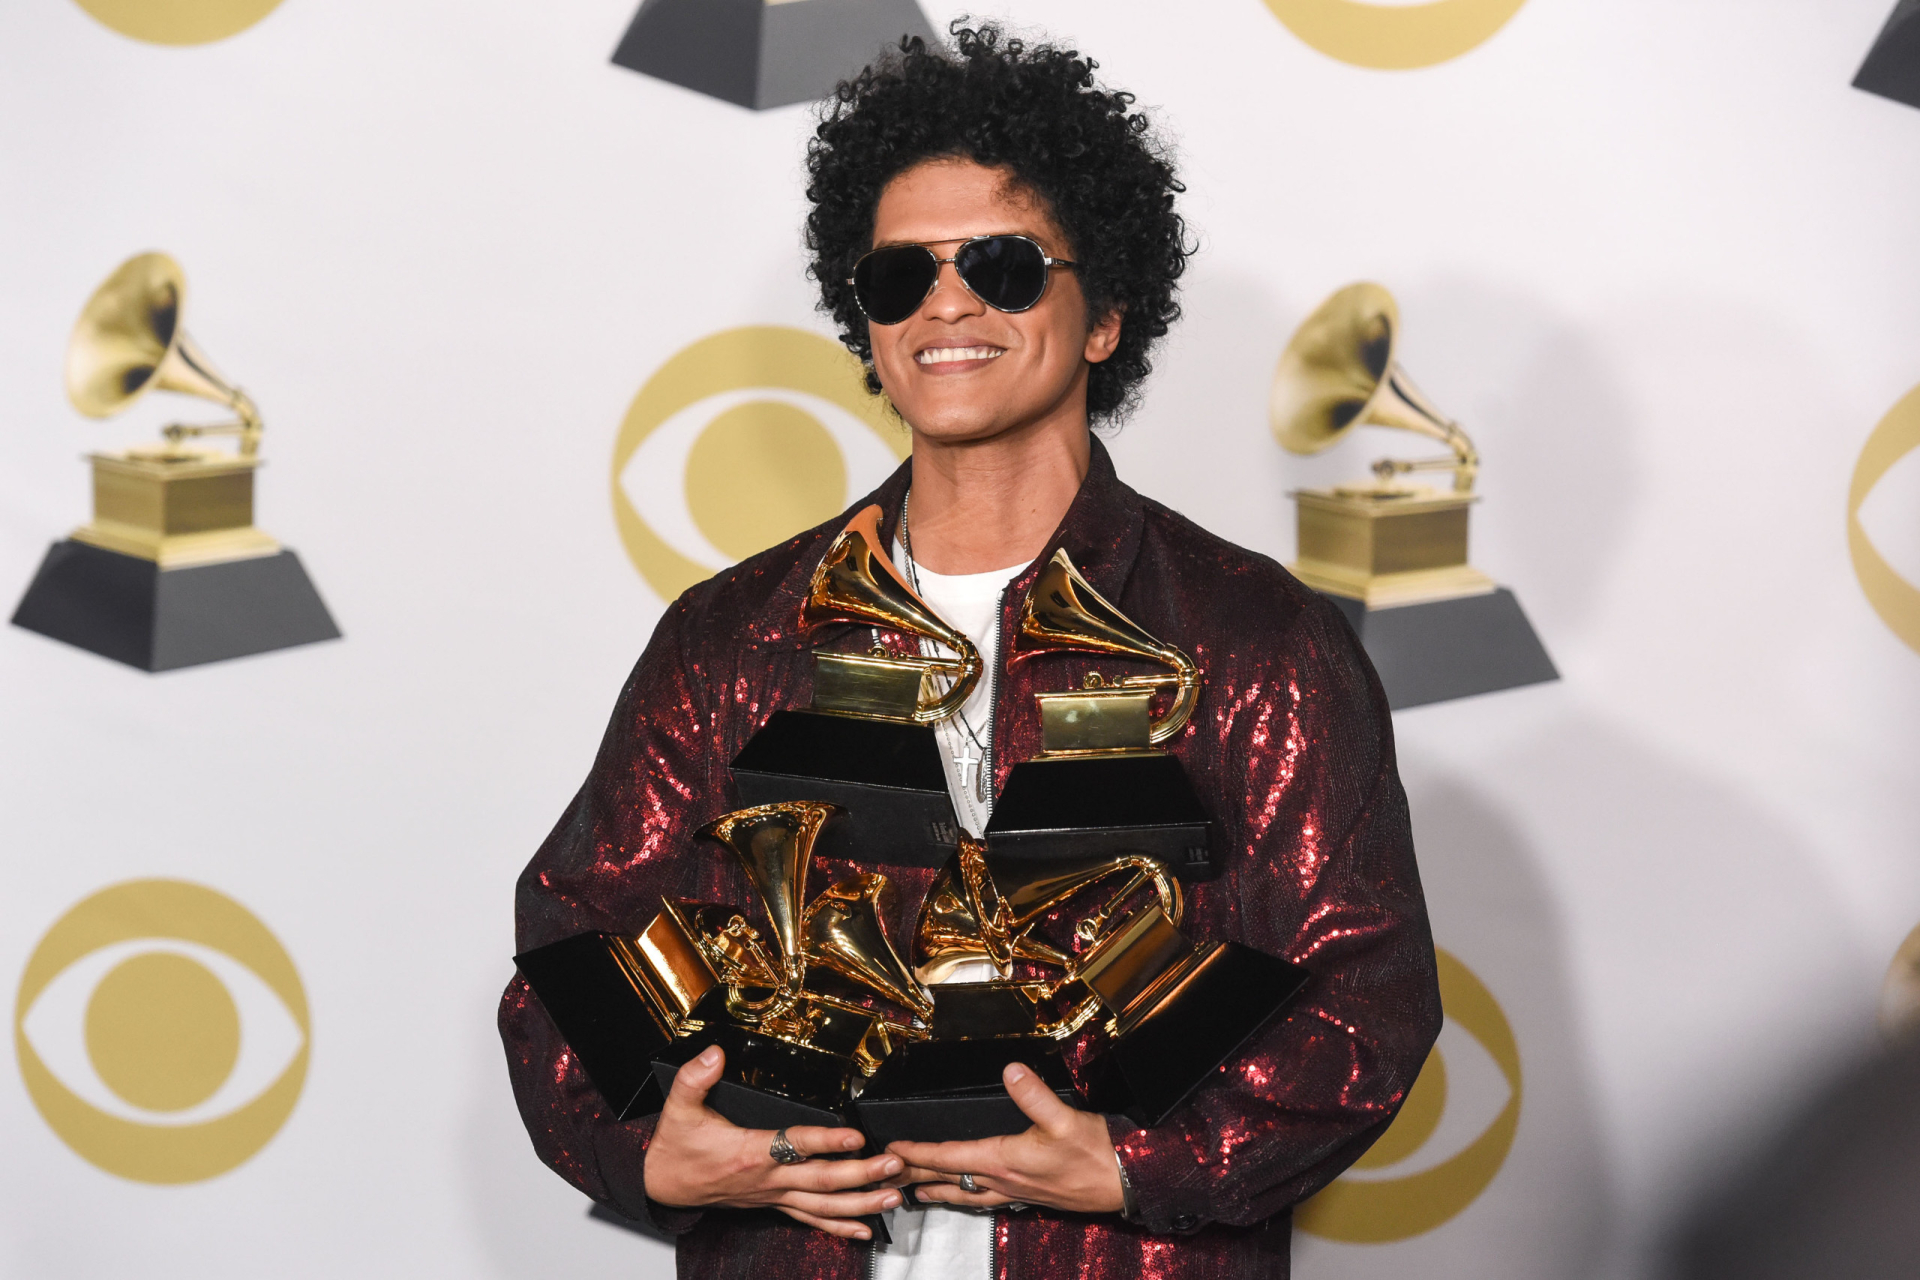 Bruno Mars – giọng ca đình đám thế giới bị cáo buộc nợ hơn 1200 tỷ đồng vì mê trò đỏ đen - ảnh 3